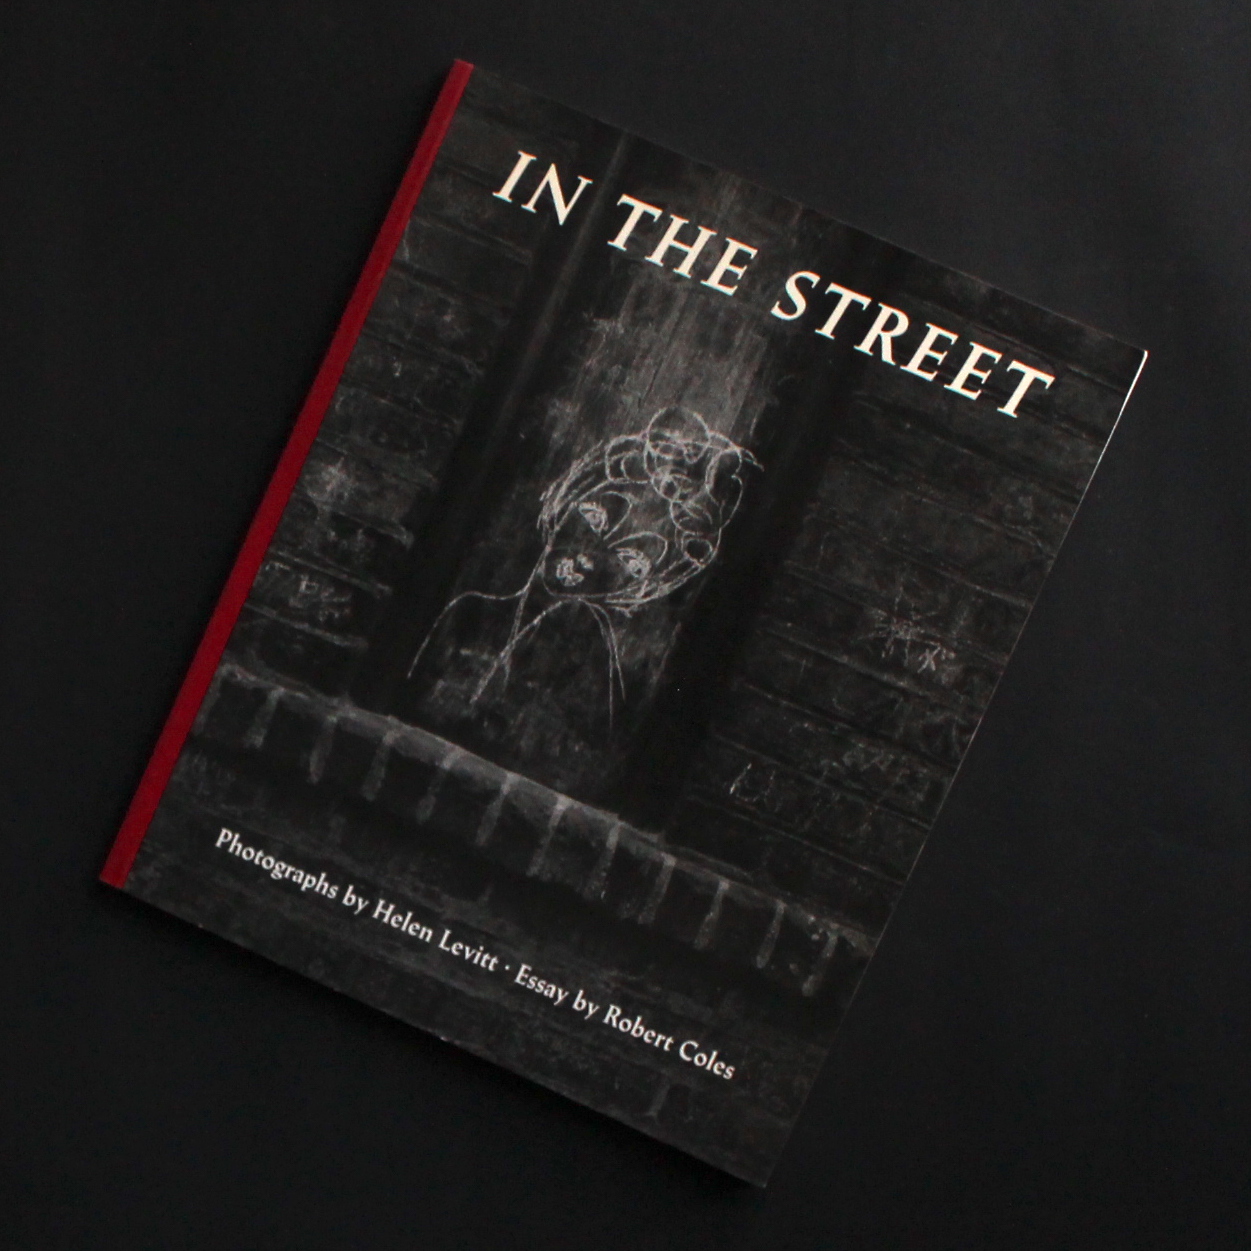 Helen Levitt / In the Street